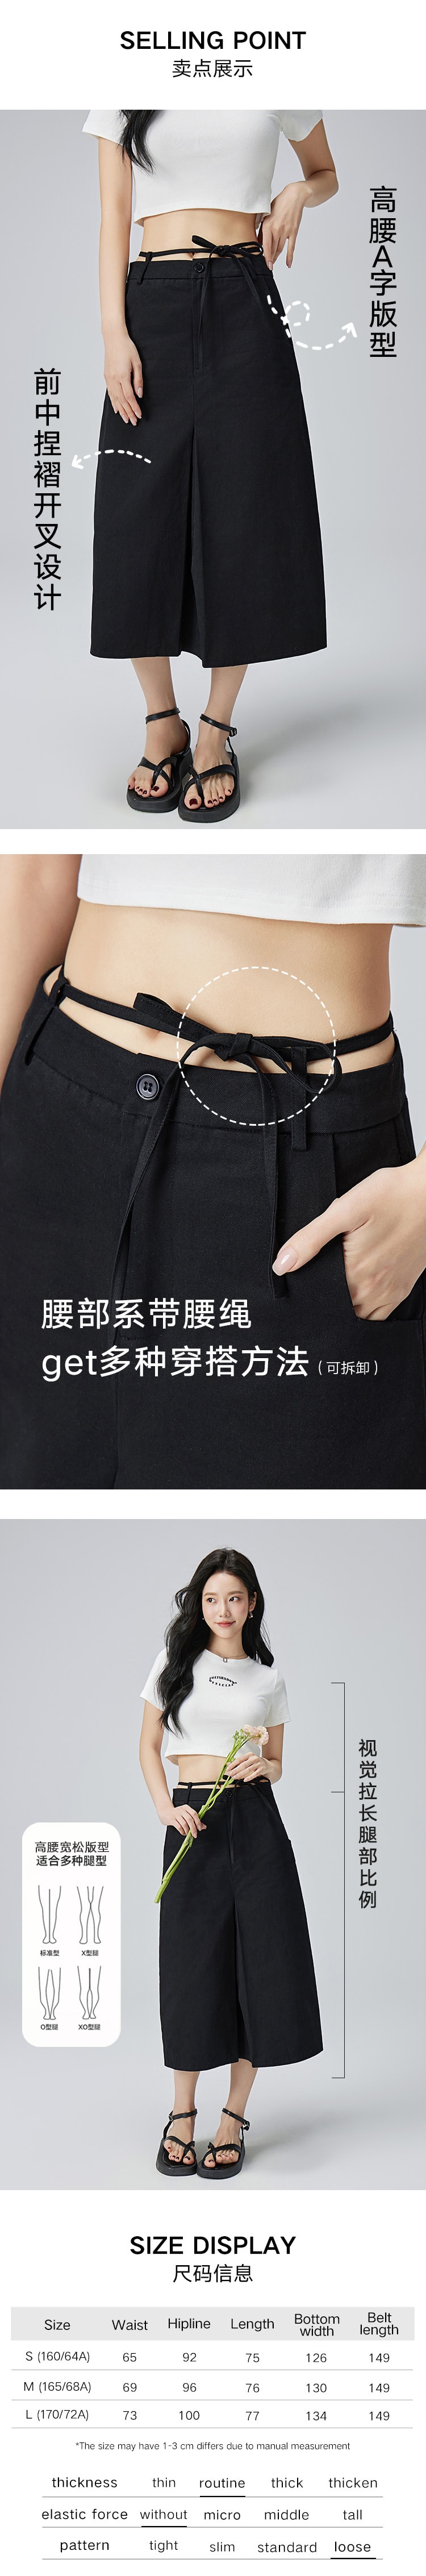 【中国直邮】HSPM 新款高腰A字系带开叉半身裙 黑色 M